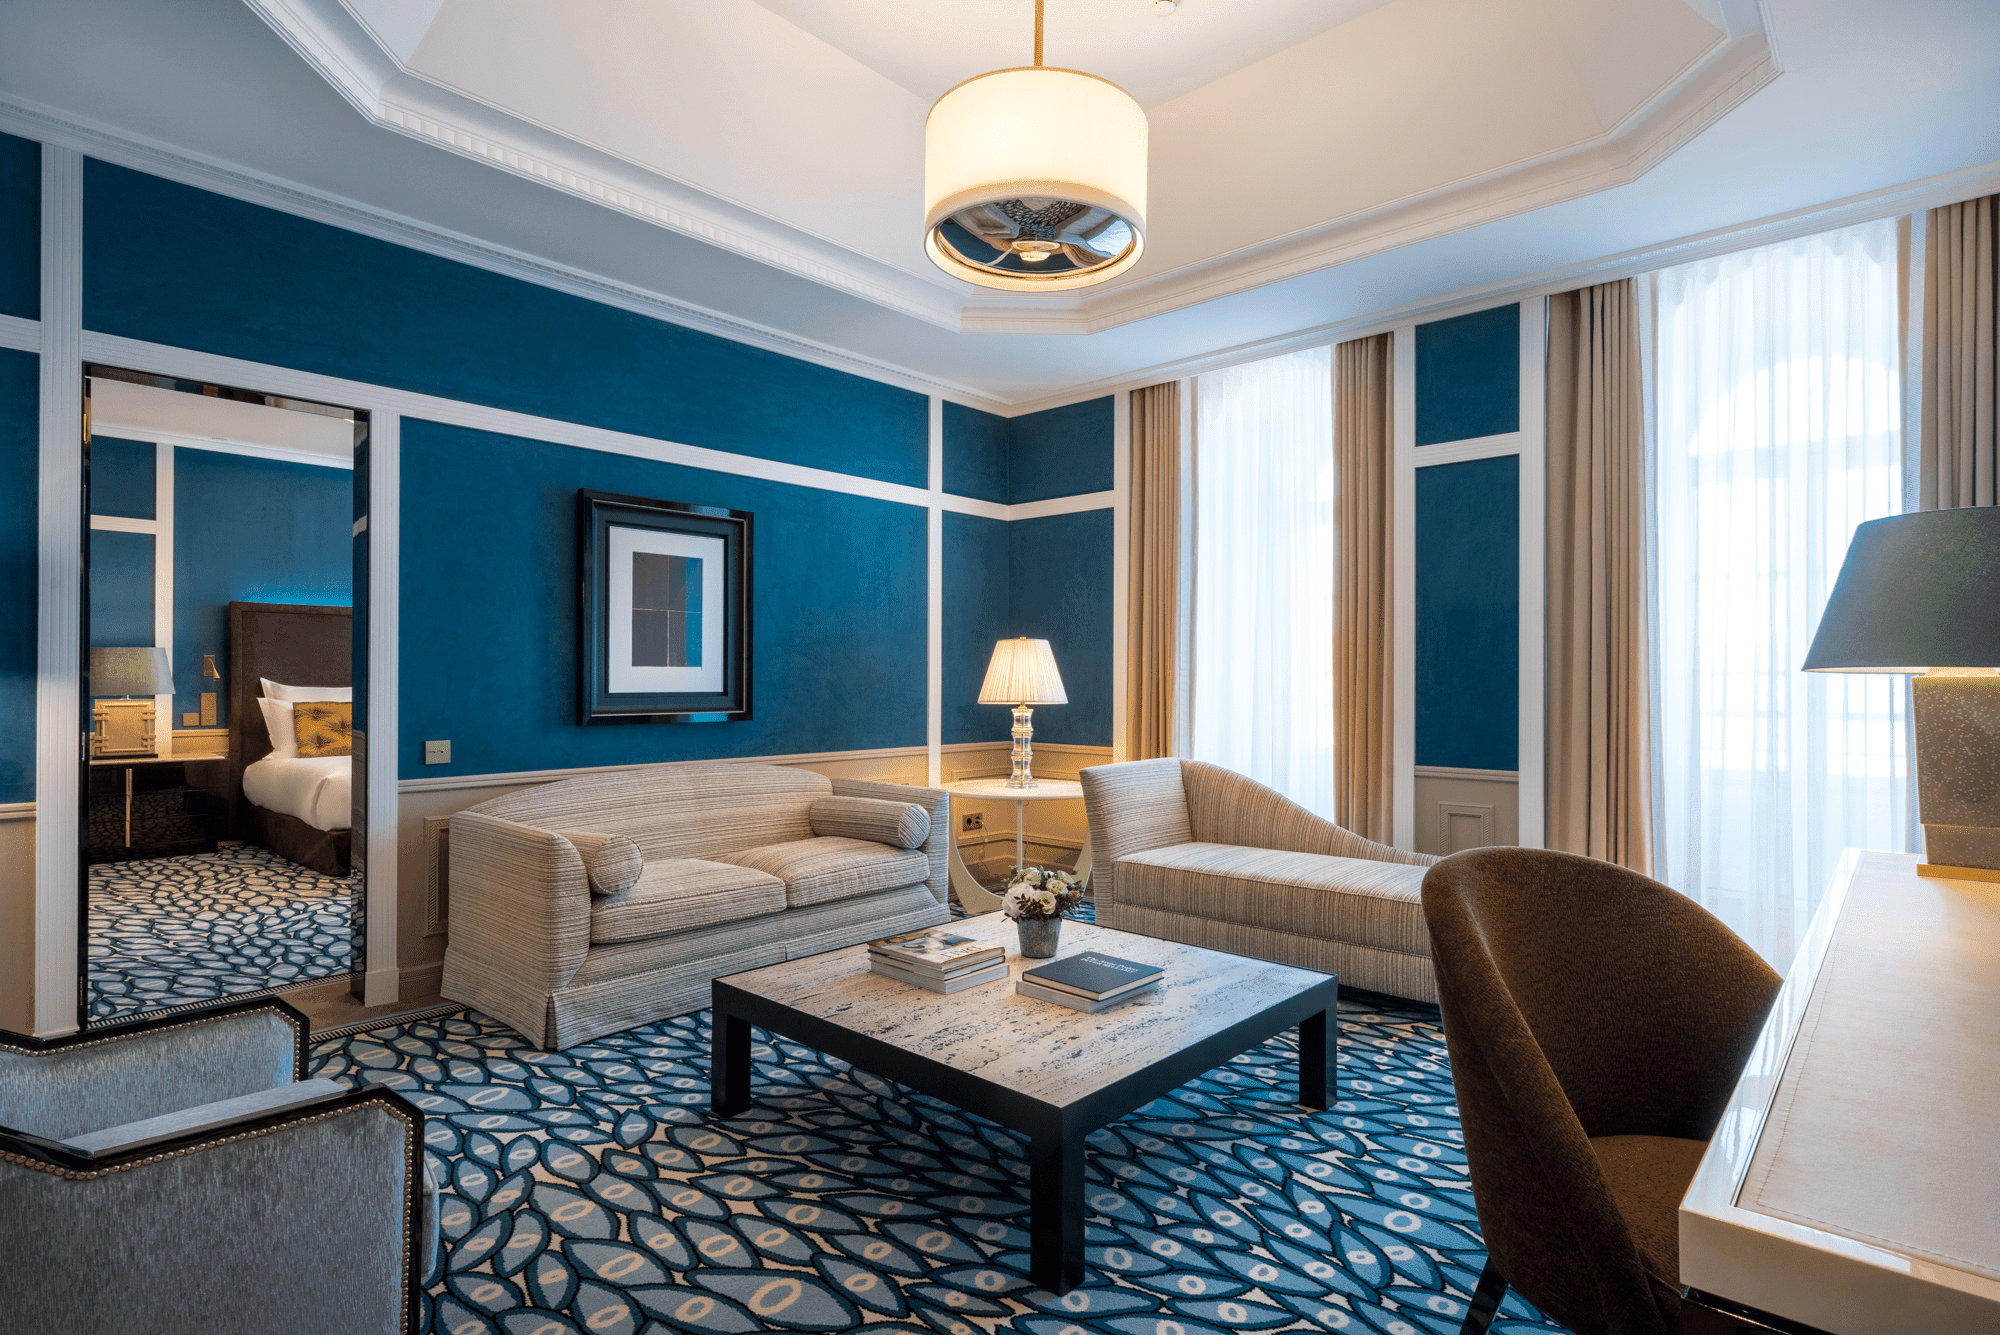 Maison Albar Hotels About Suite Monumentale